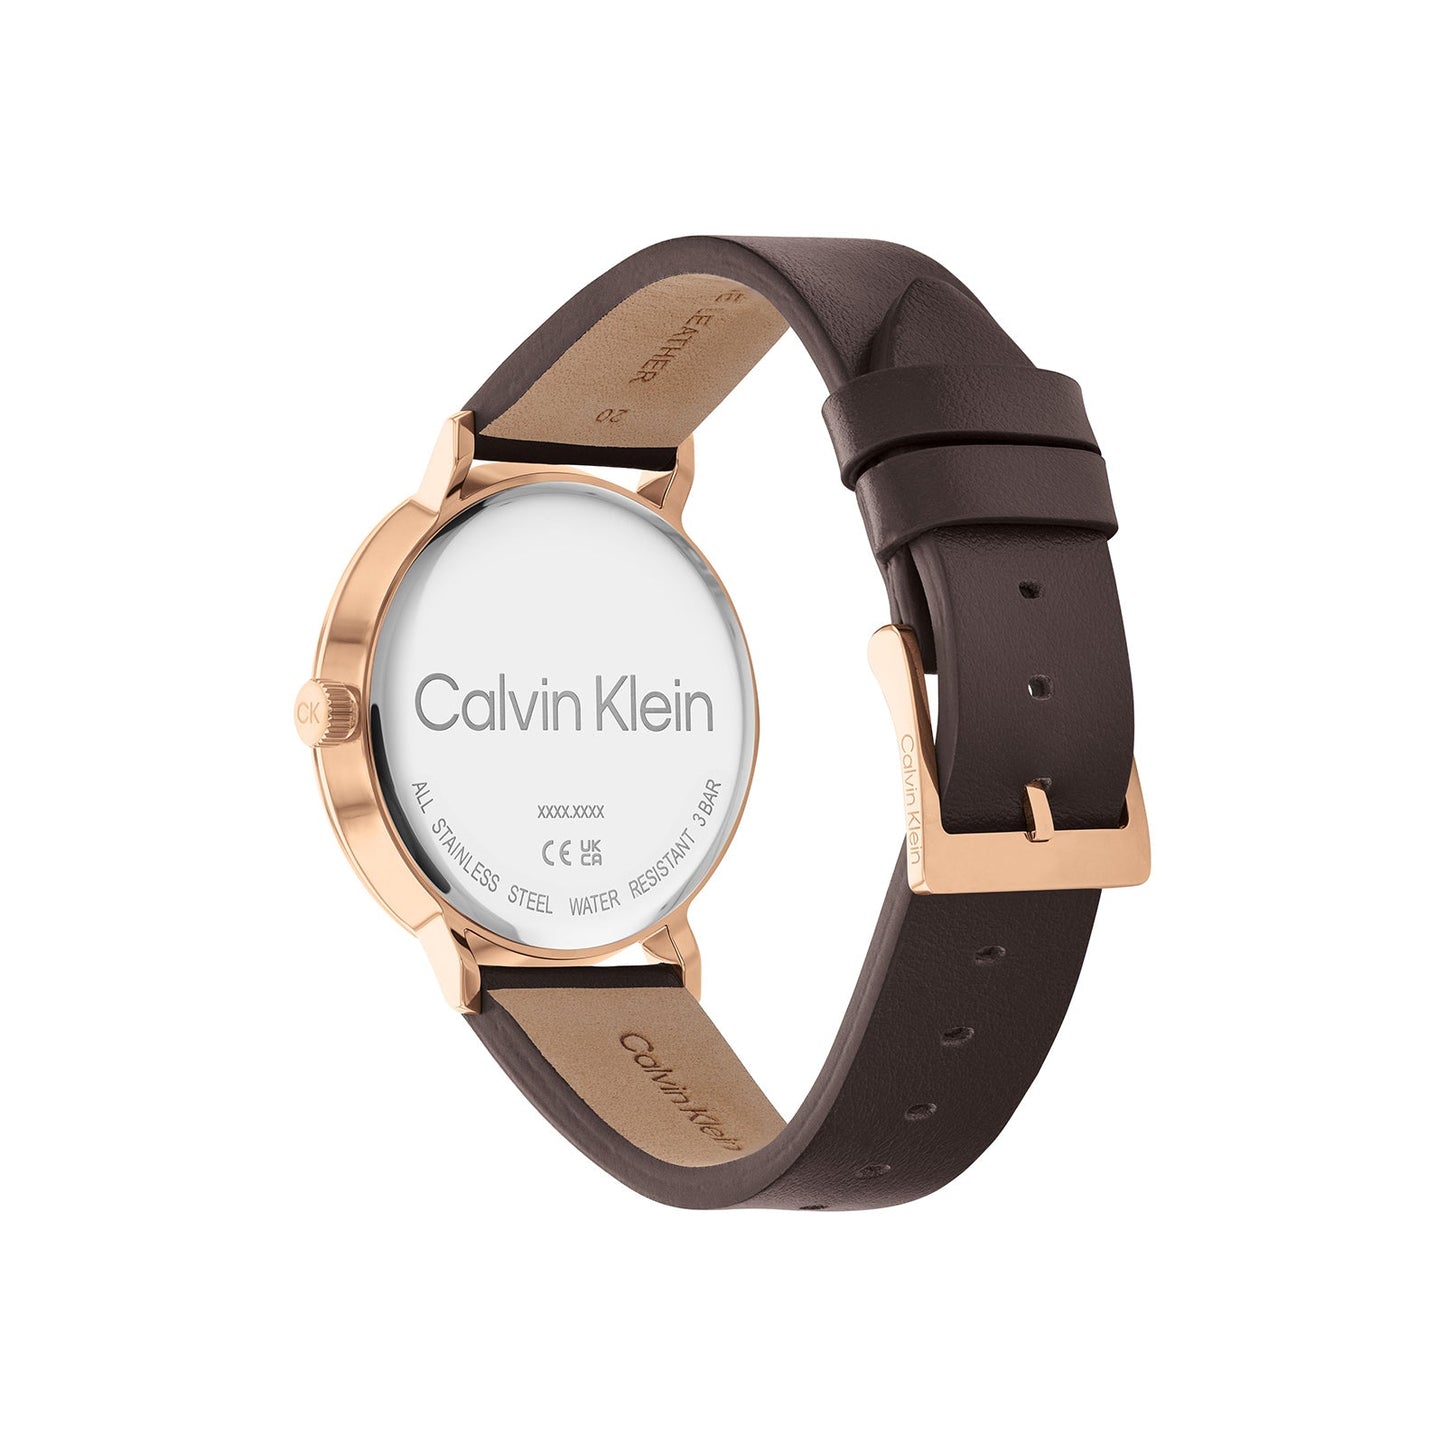 Calvin Klein 25200051 Men's Leather Watch